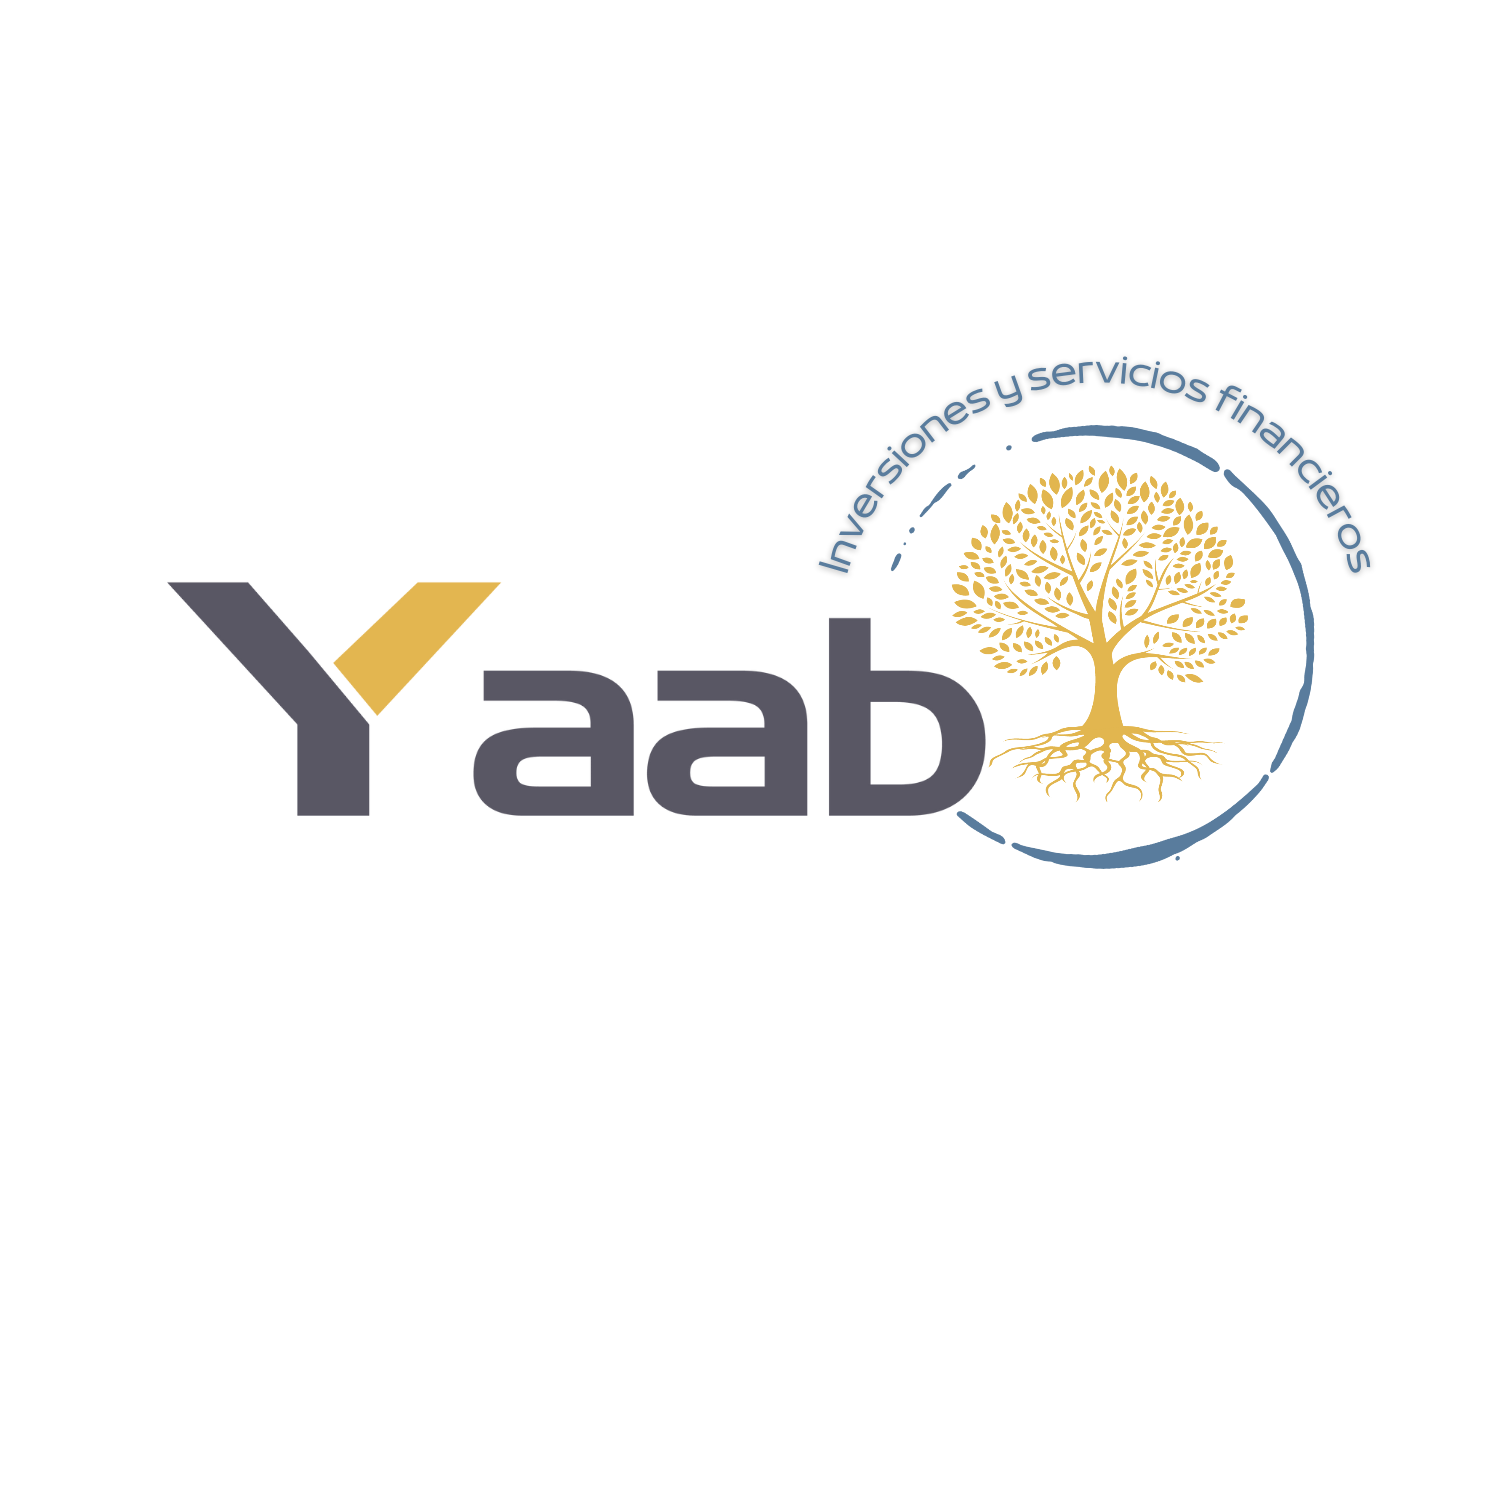 YAAB Inversiones y servicios financieros